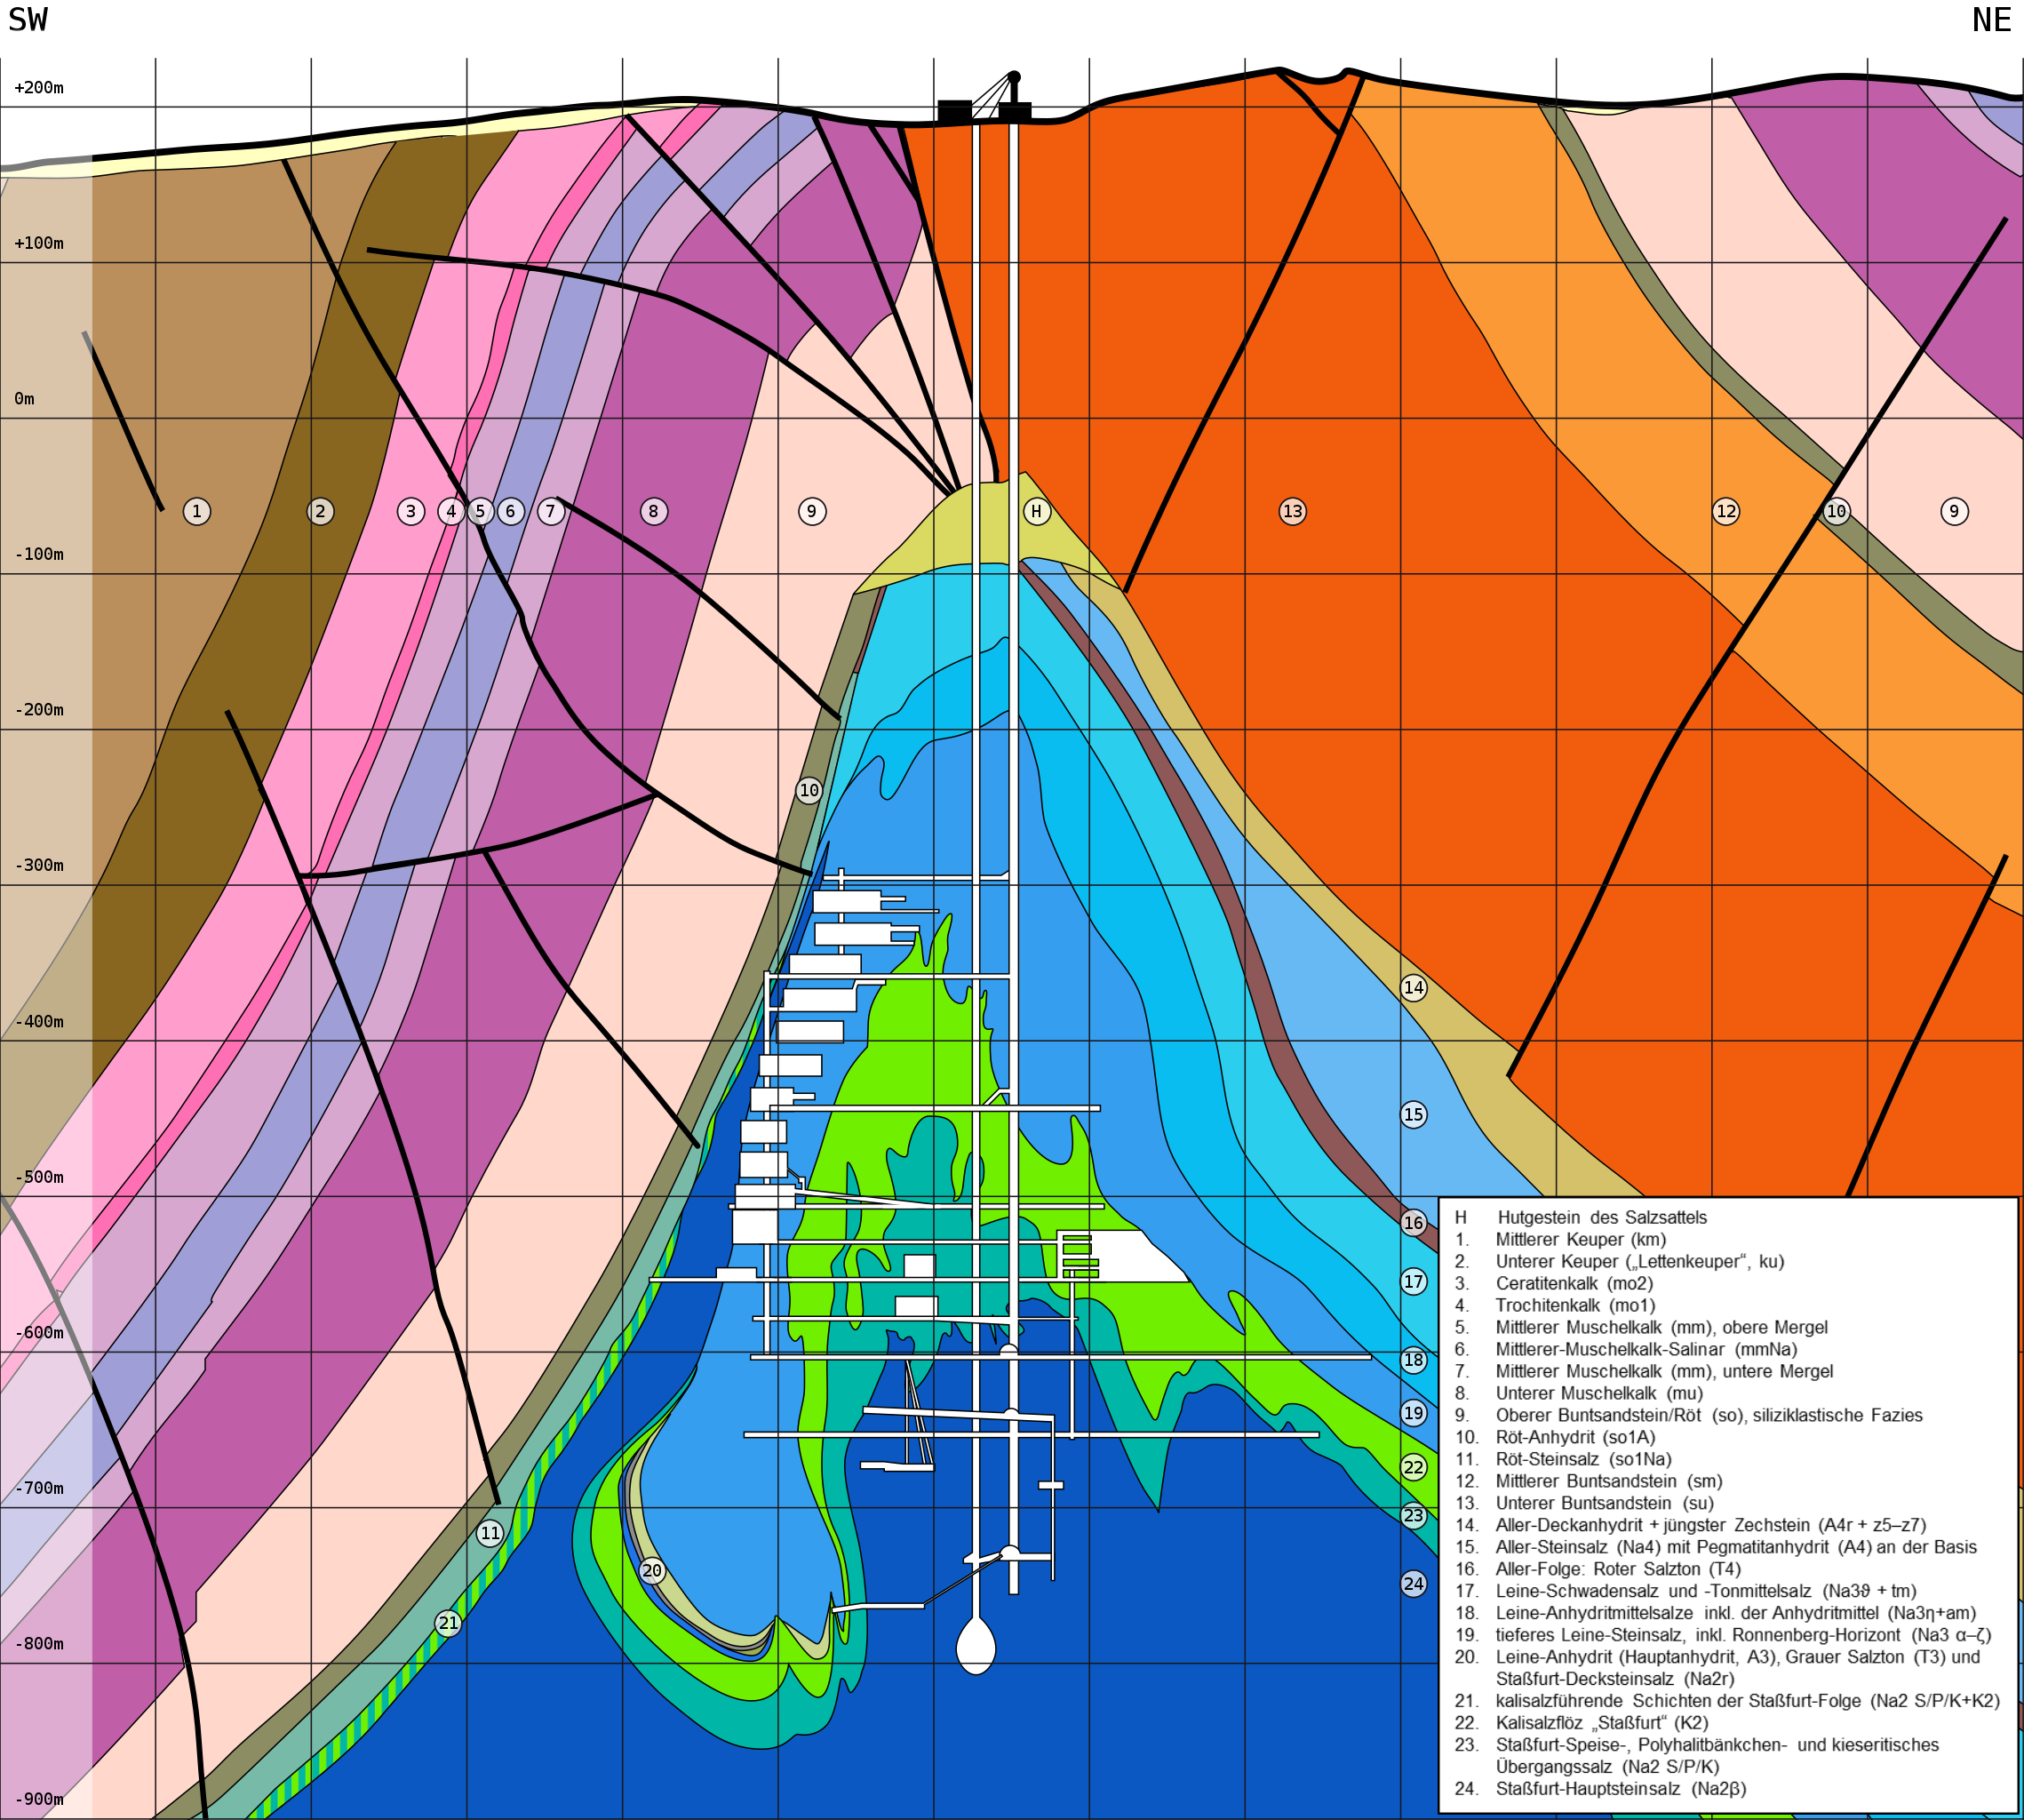 Schnitt durch die Schachtanlage der Asse. Es zeigt die sehr komplexe Geologie mit den steil stehenden Flanken der Salzstruktur und den Störungen in den das Salz überlagernden Sedimentschichten. (Quelle: nach Thömmes & Gömmel, 2004, und Szymaniak & Schäfer, 2002)